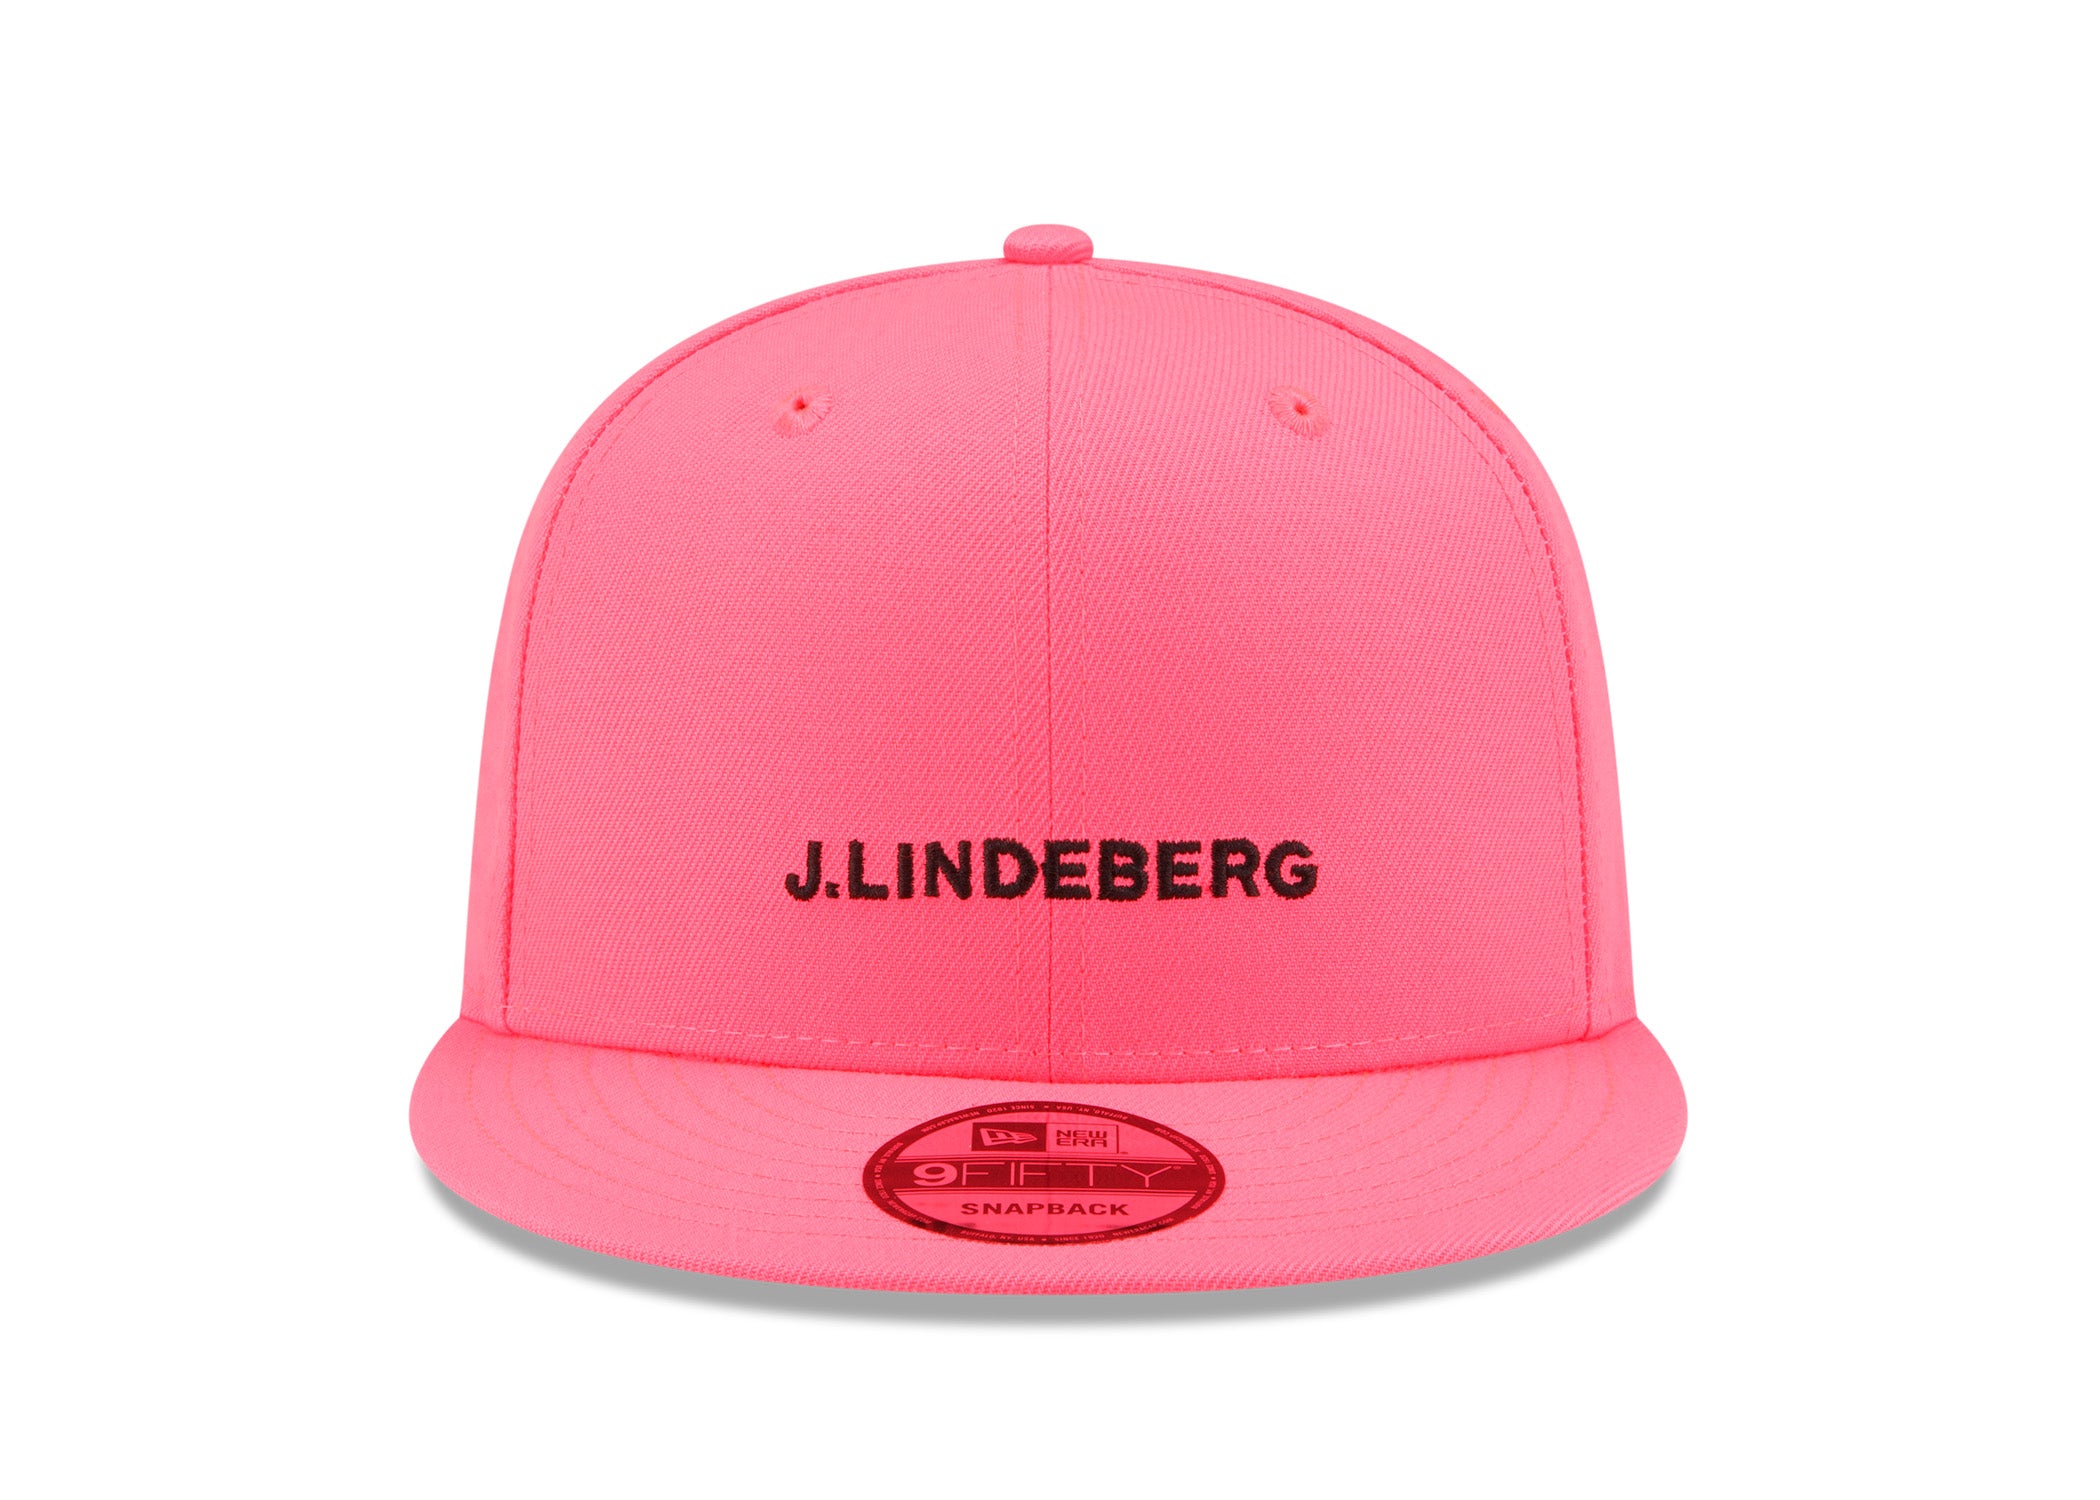 제이린드버그 J.LINDEBERG JL x New Era 9FIFTY Pink,Hot Pink